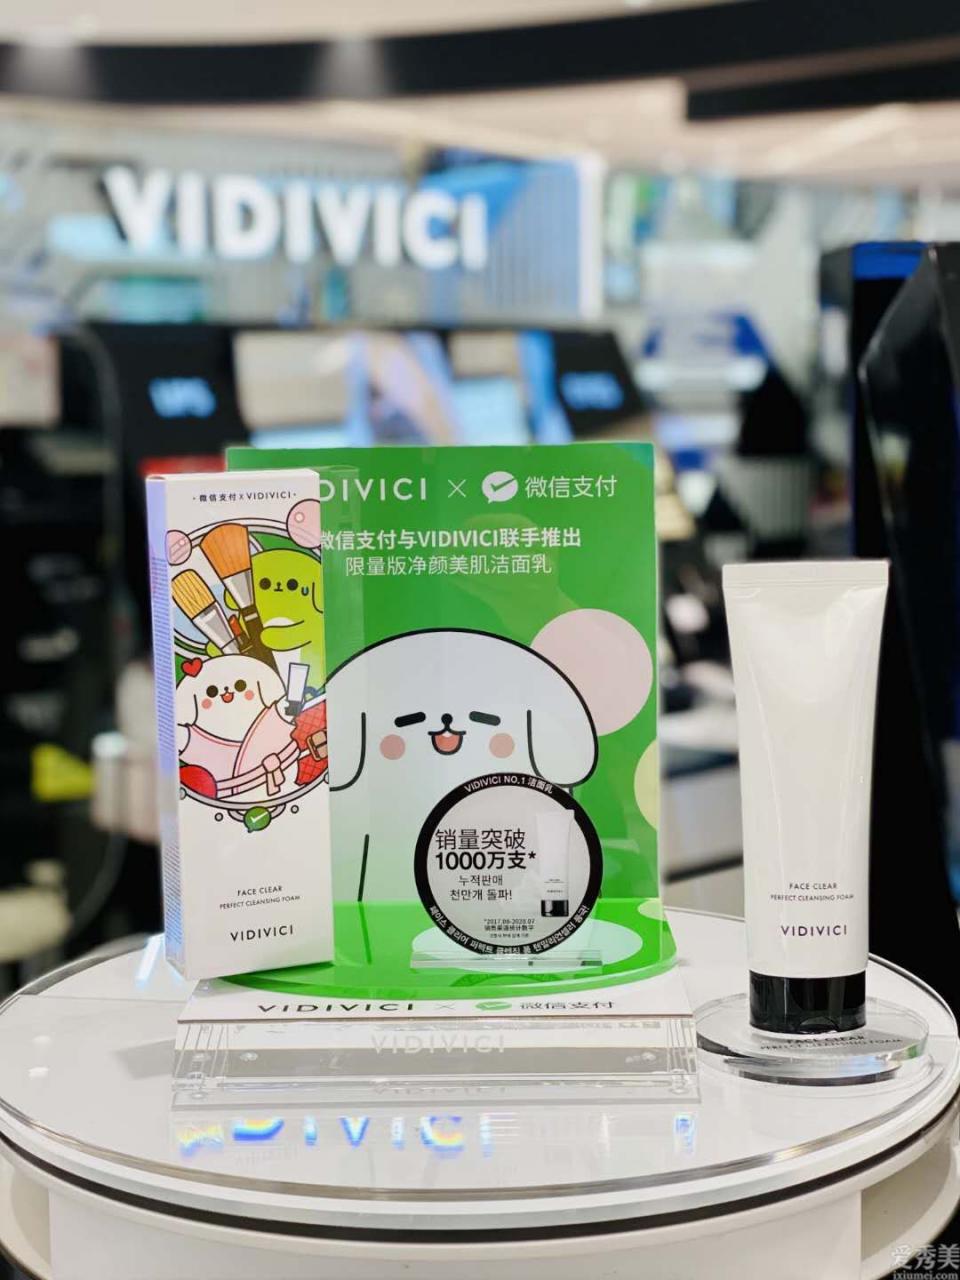 VIDIVICI x 微信支付聯名款凈顏美肌潔面乳登陸，雙十一紅盒套裝限量發售